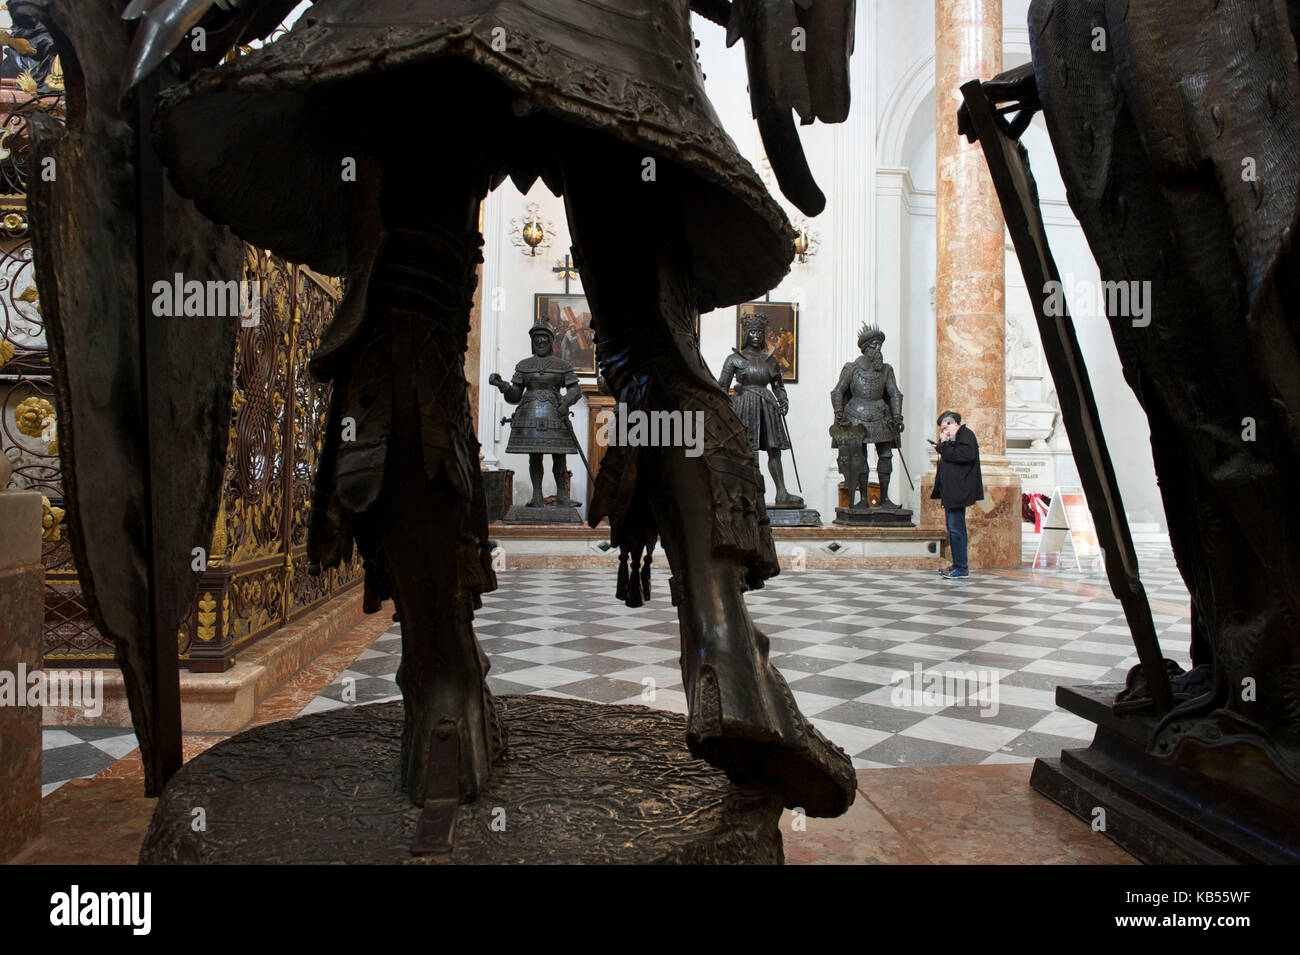 Austria, Tirol, Innsbruck, Hofkirche, 28 estatuas monumentales de bronce rodean la tumba del emperador Maximiliano I, el monumento imperial más importante de Europa Foto de stock